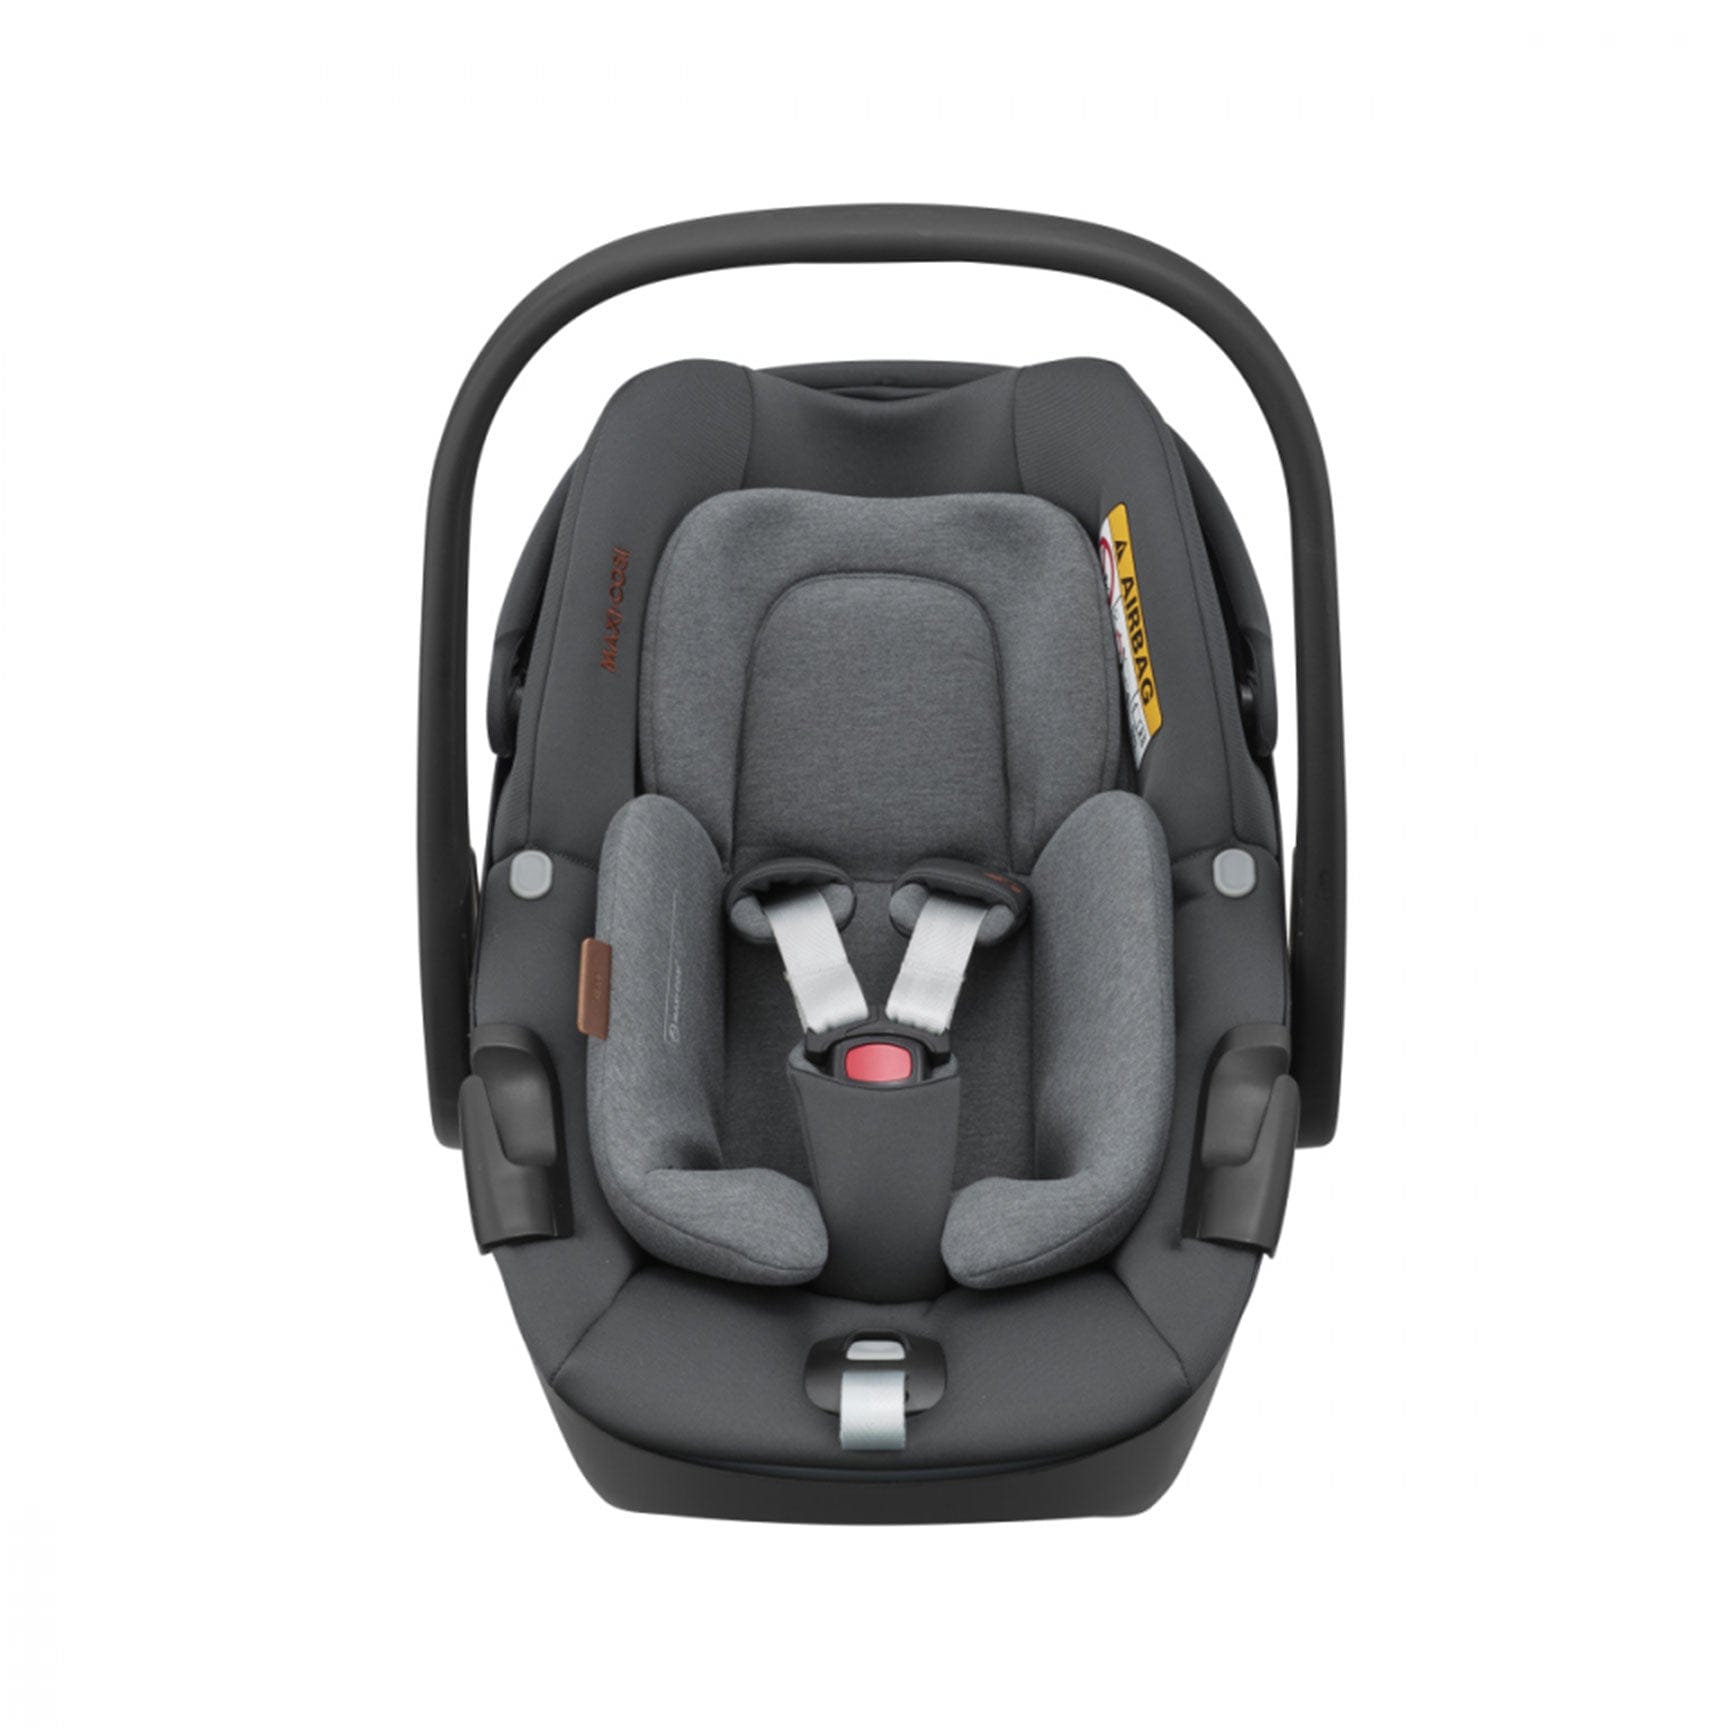 Maxi-Cosi Pebble 360 Luxe in Twillic Grey Baby Car Seats 8044370300 8712930173953